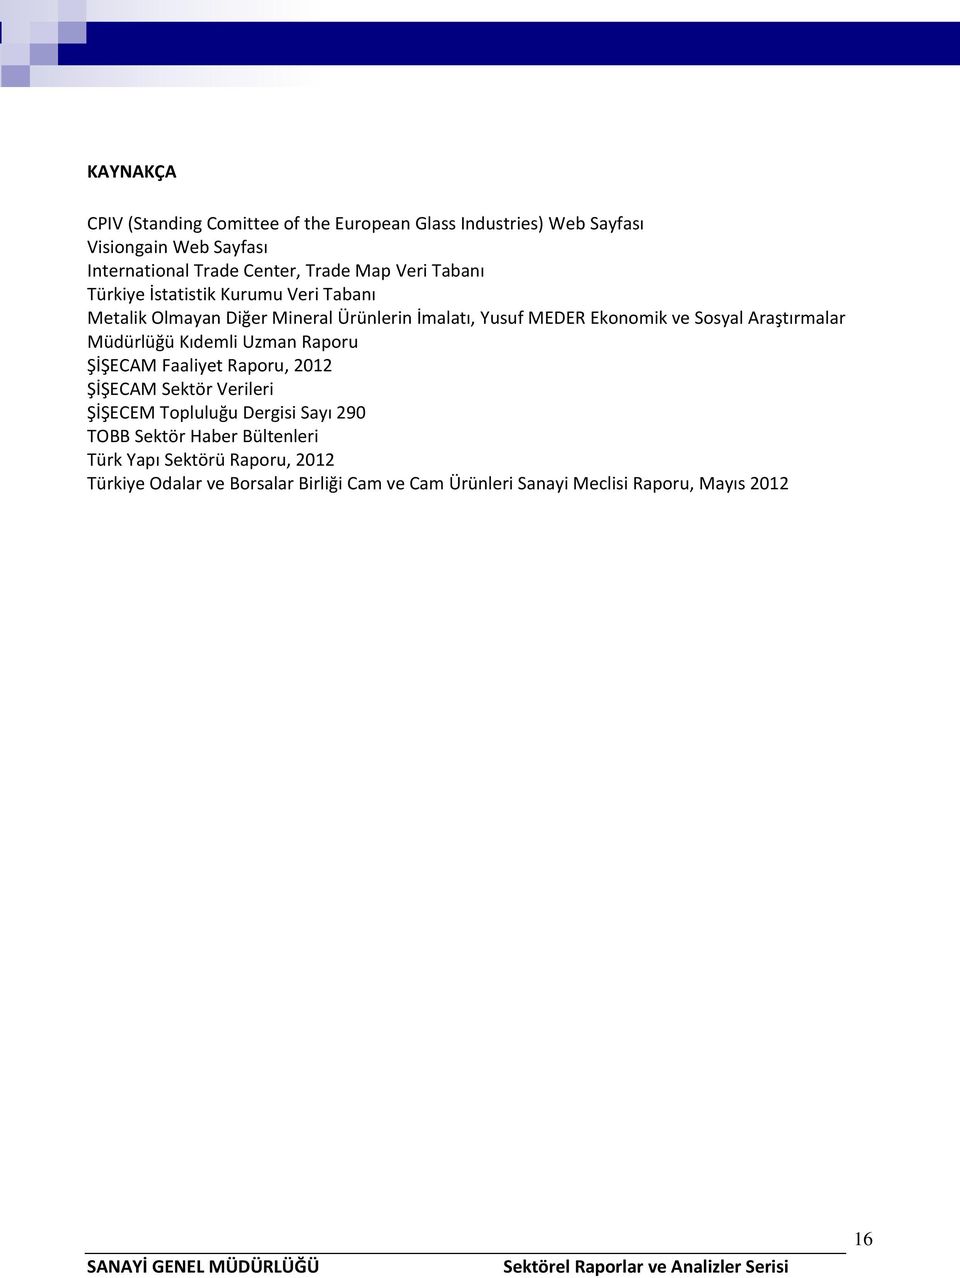 Araştırmalar Müdürlüğü Kıdemli Uzman Raporu ŞİŞECAM Faaliyet Raporu, 2012 ŞİŞECAM Sektör Verileri ŞİŞECEM Topluluğu Dergisi Sayı 290 TOBB